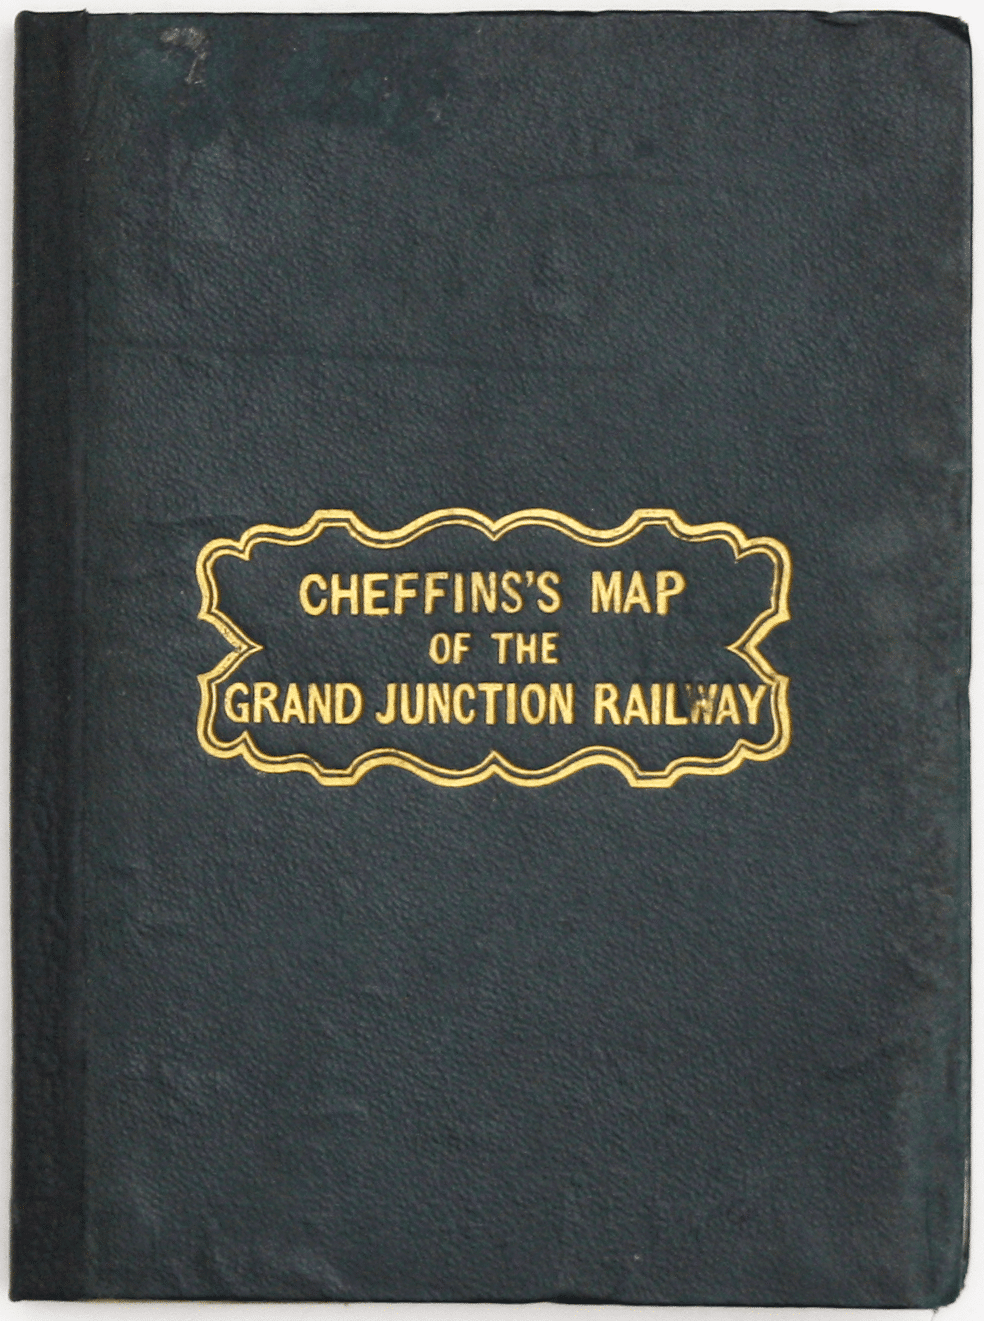 Cheffins’ Grand Junction Railway Map